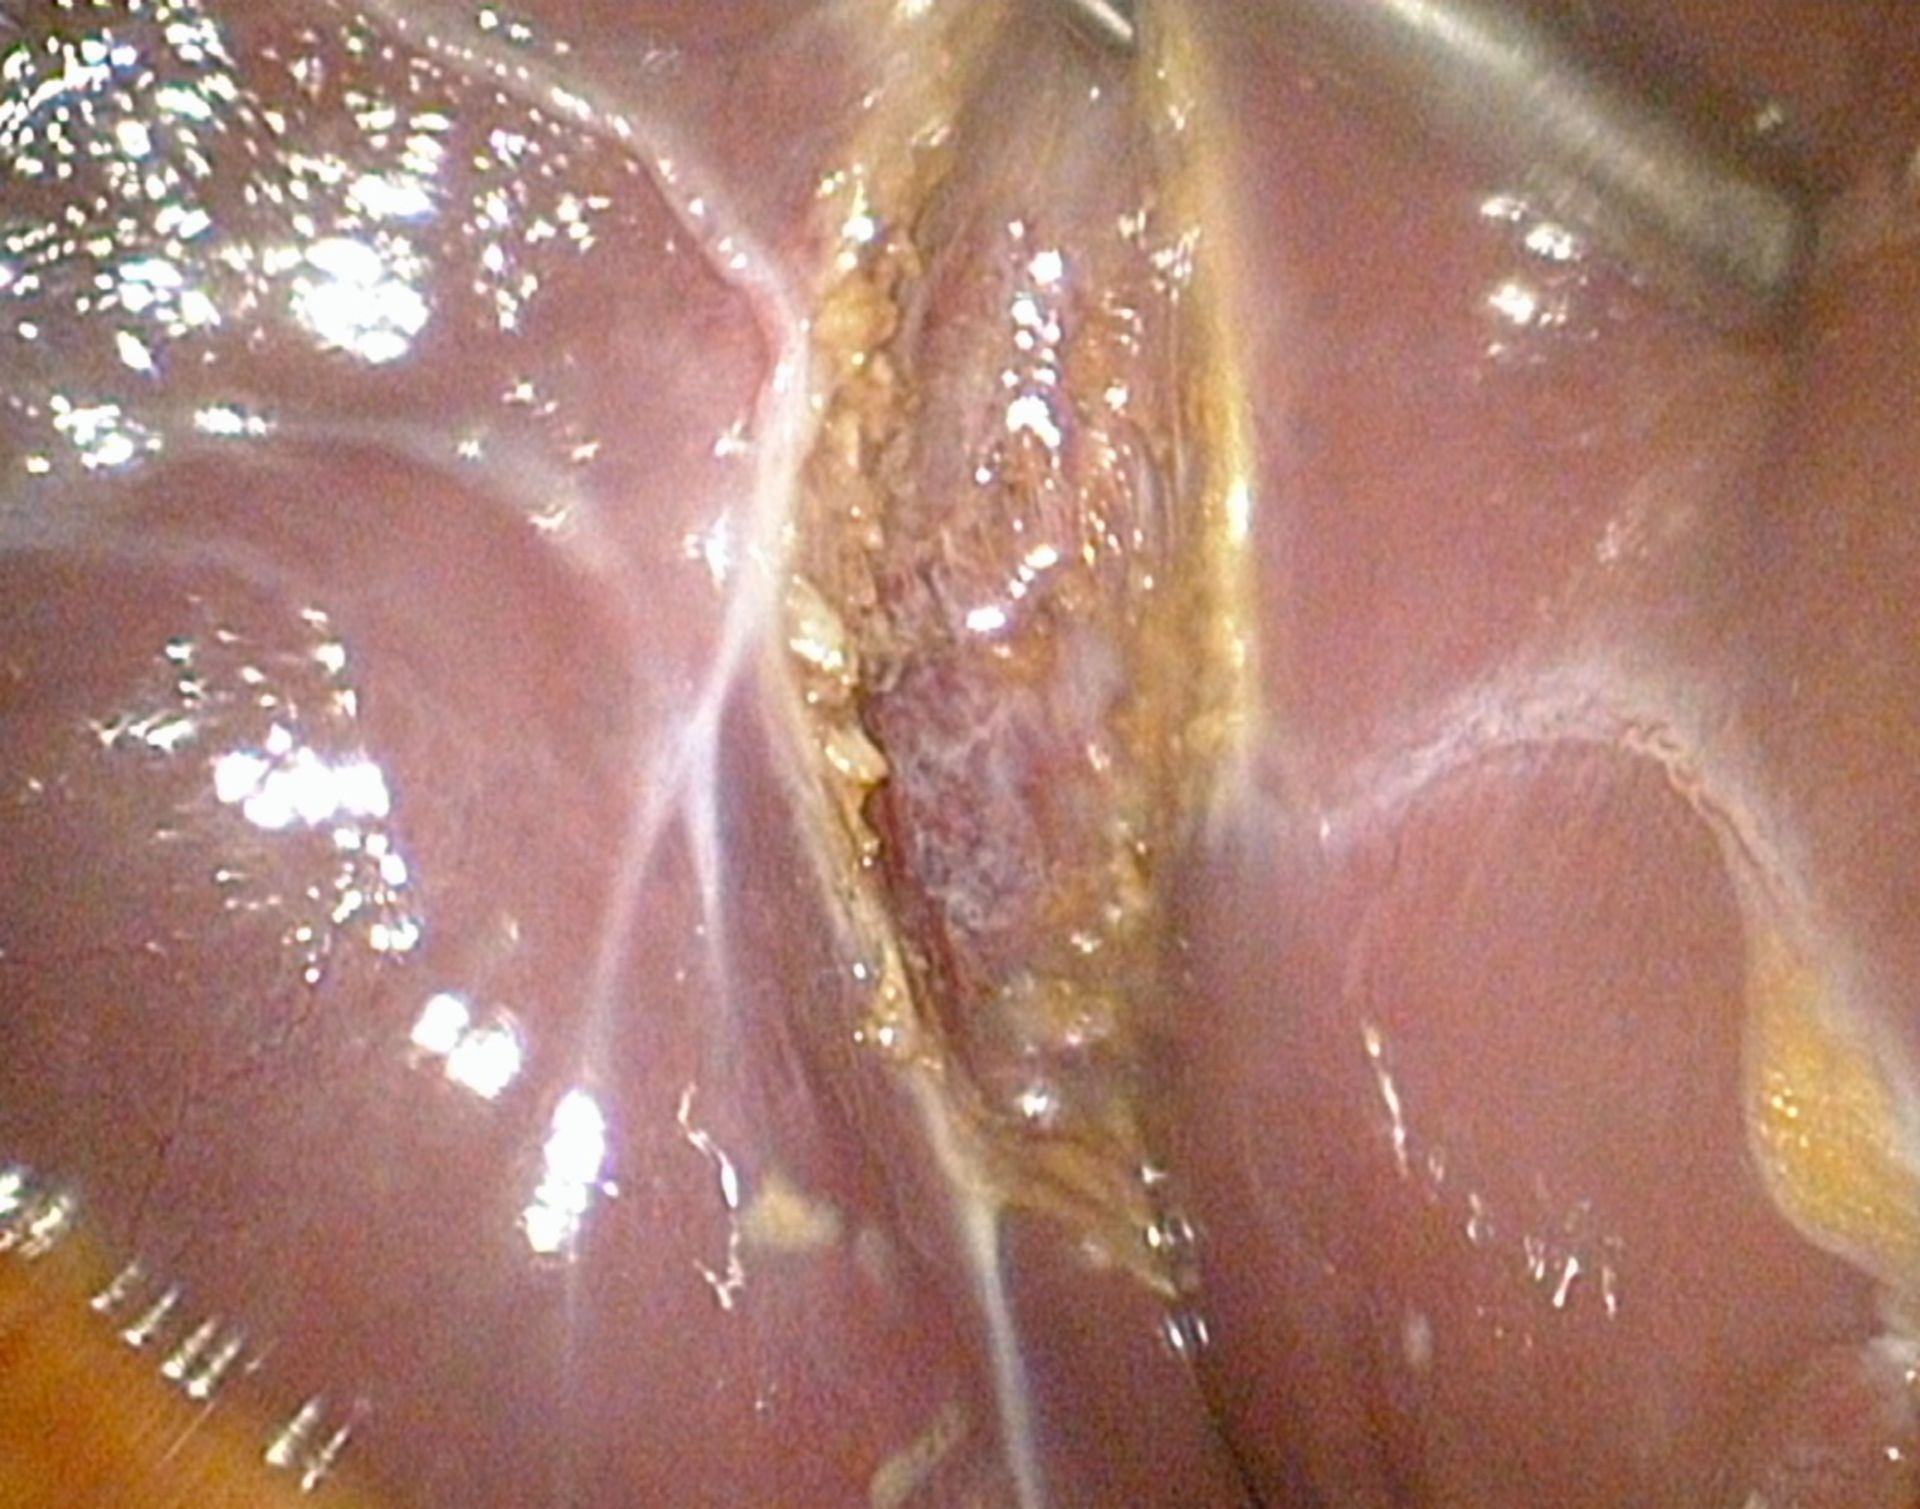 Gallenblasenbett- Zustand nach laparoskopischer Cholecystektomie